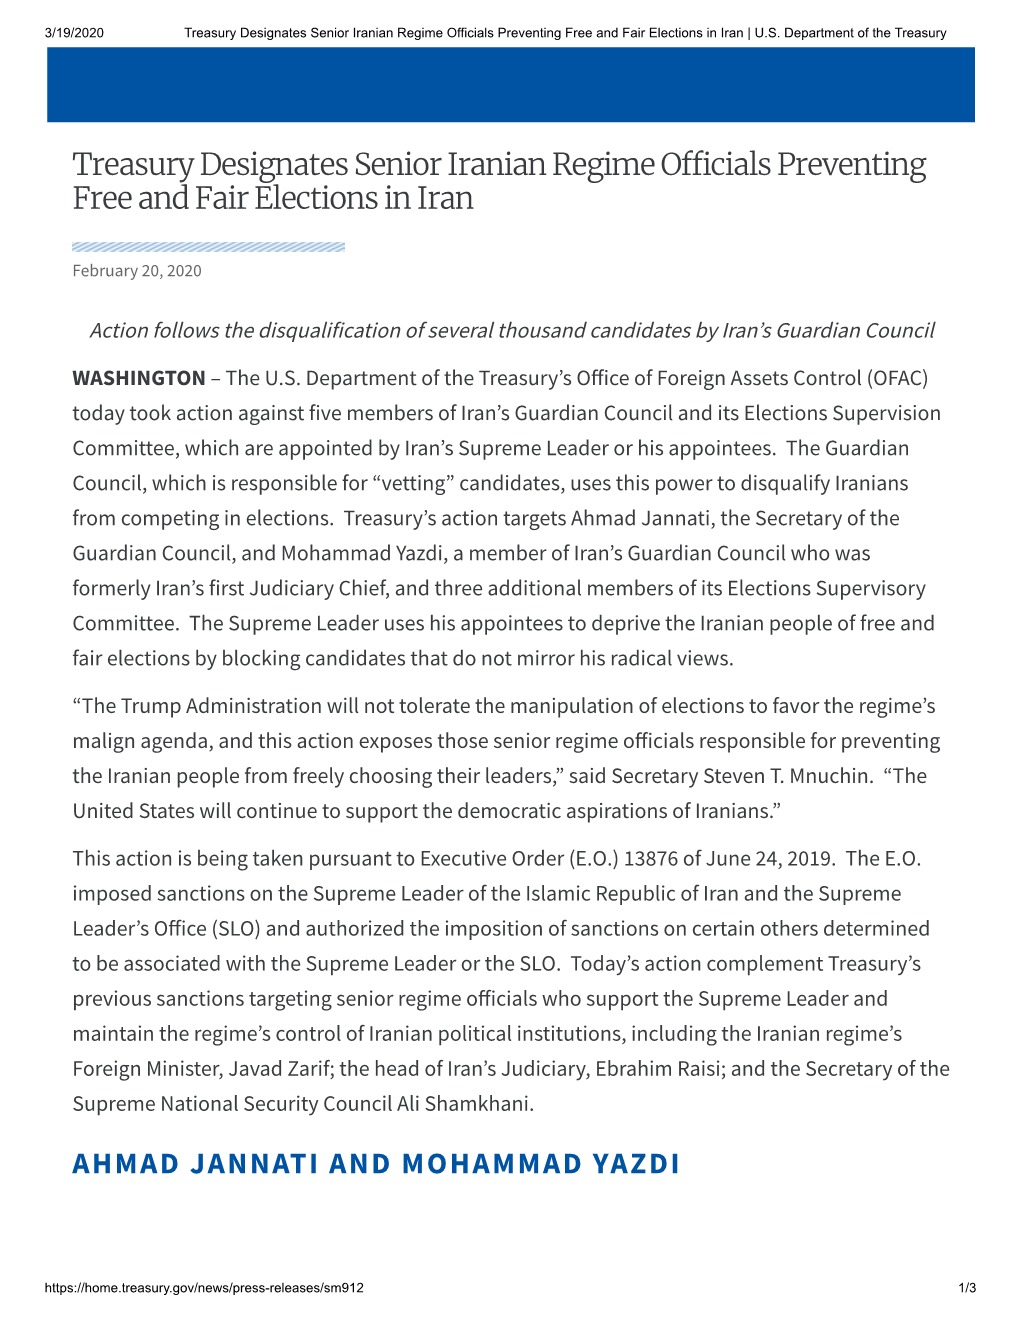 Treasury Designates Senior Iranian Regime Officials Preventing Free and Fair Elections in Iran | U.S